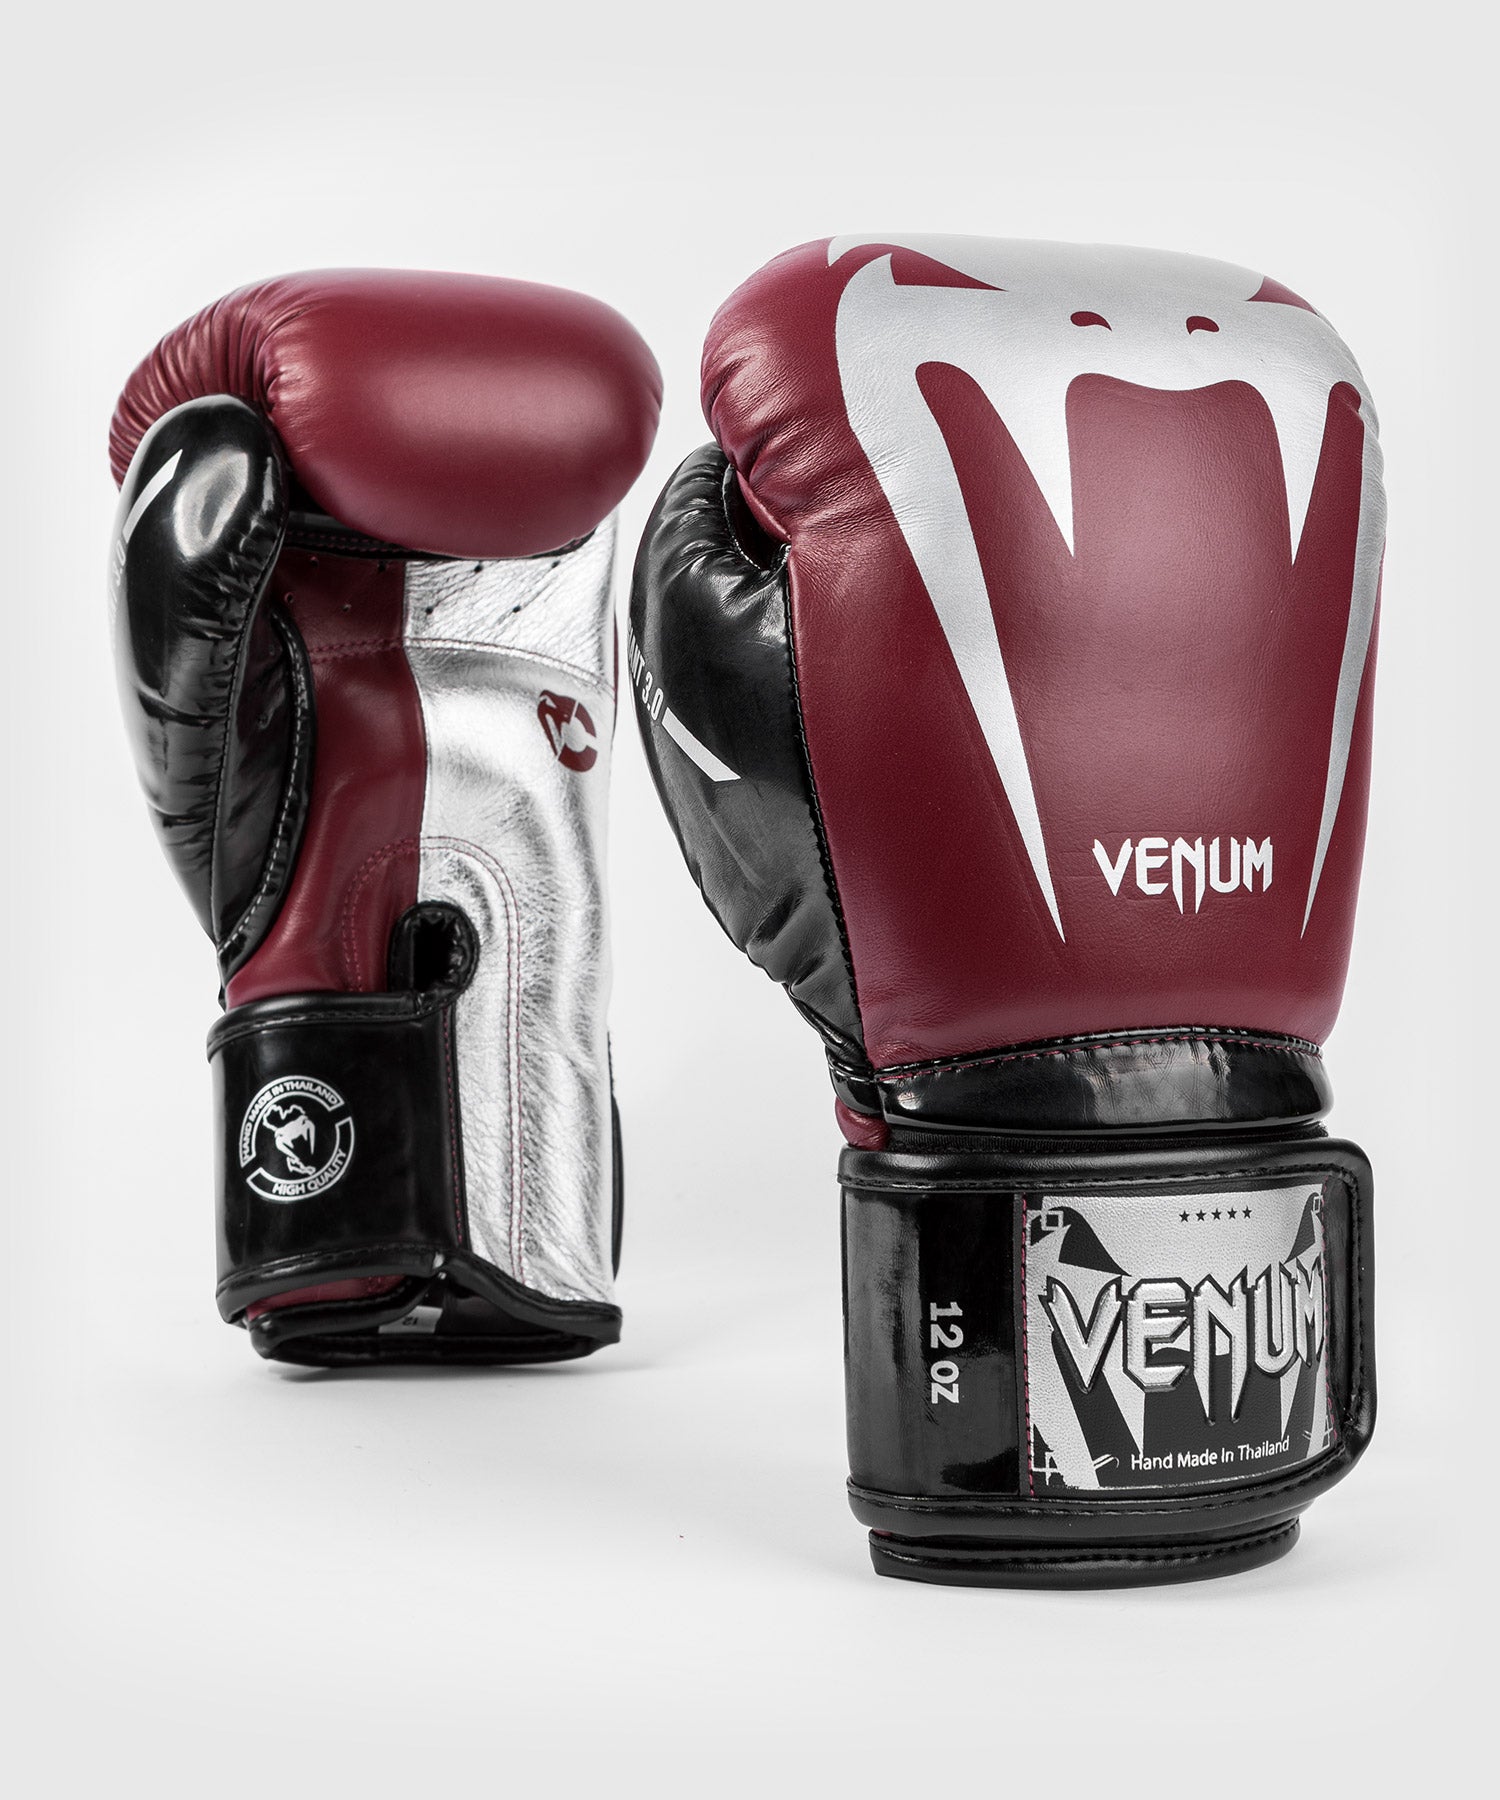 Gants de boxe Giant 3.0 - Cuir Nappa Venum